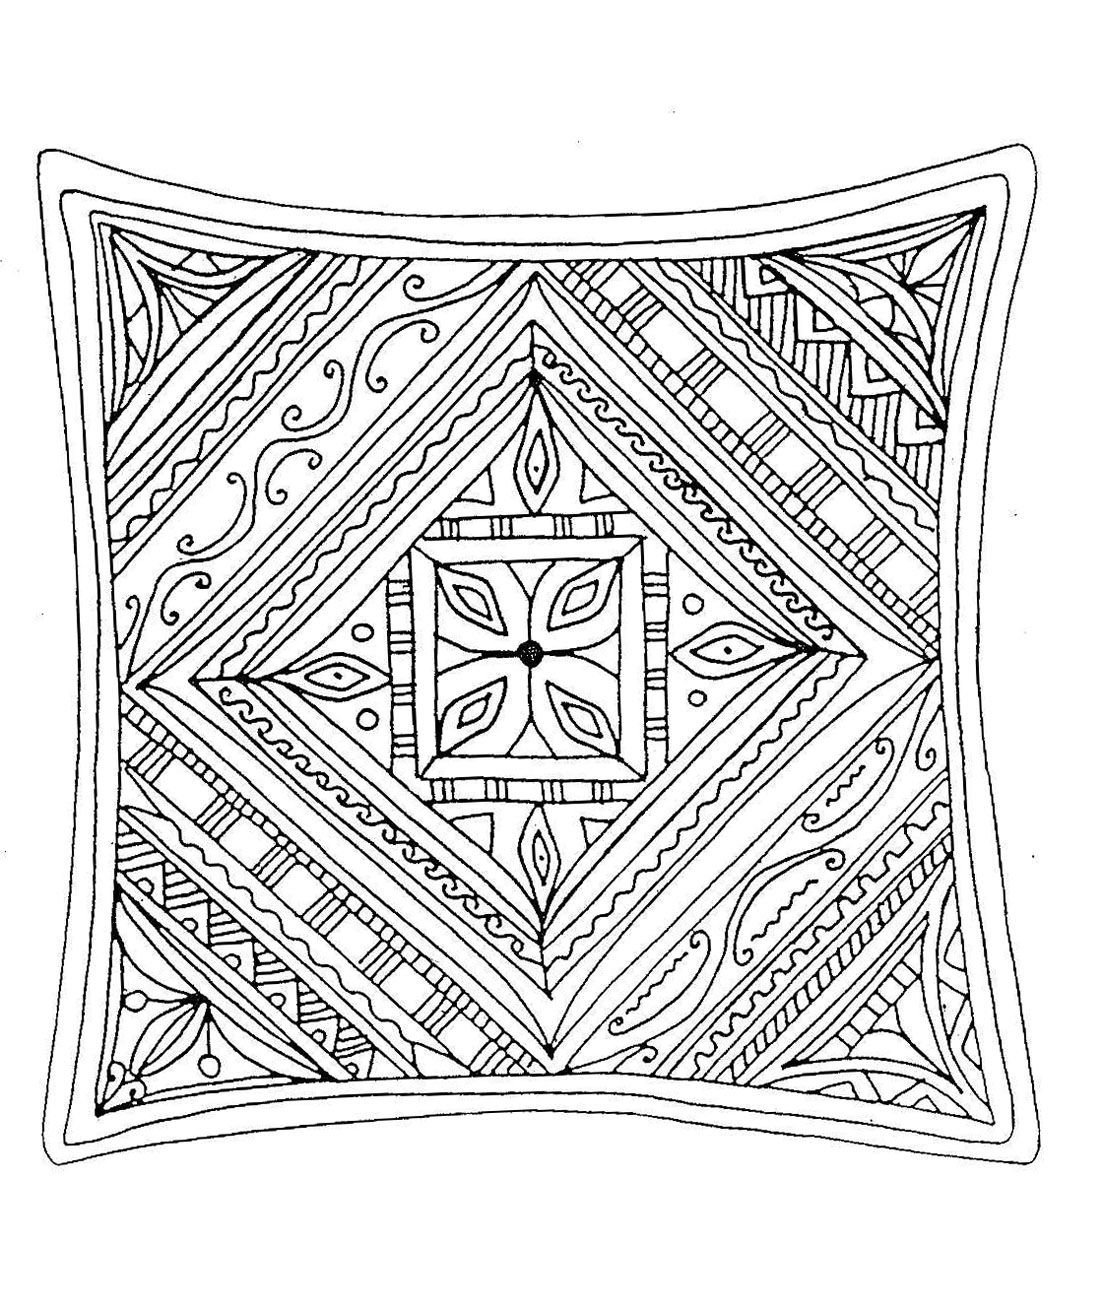 Eine Art handgezeichnetes quadratisches Mandala, sehr hübsch und beruhigend